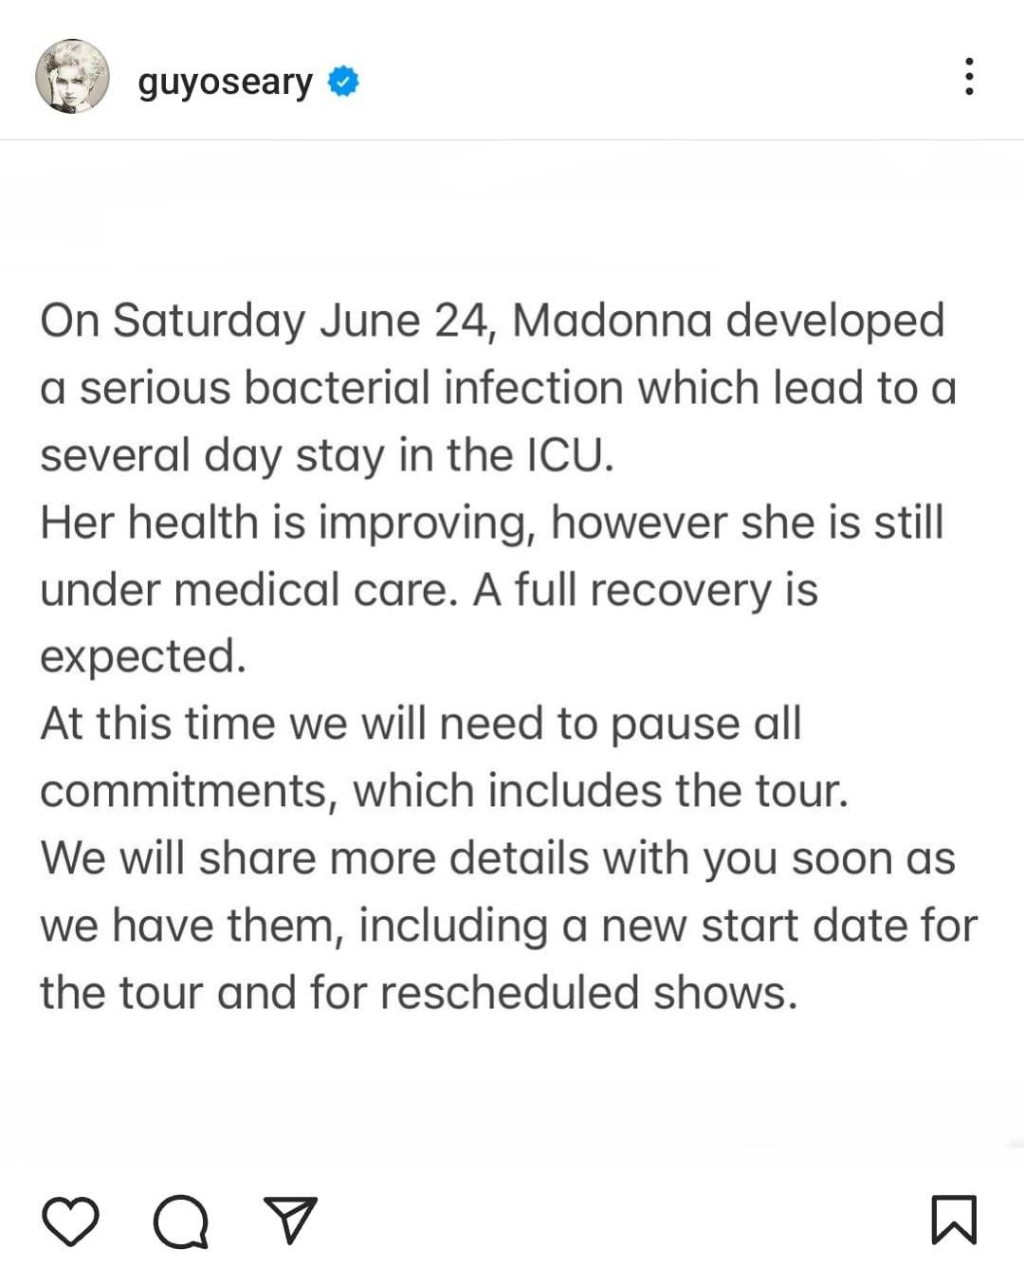 經理人Guy發聲明表示麥當娜正在治療，預計會完全康復。